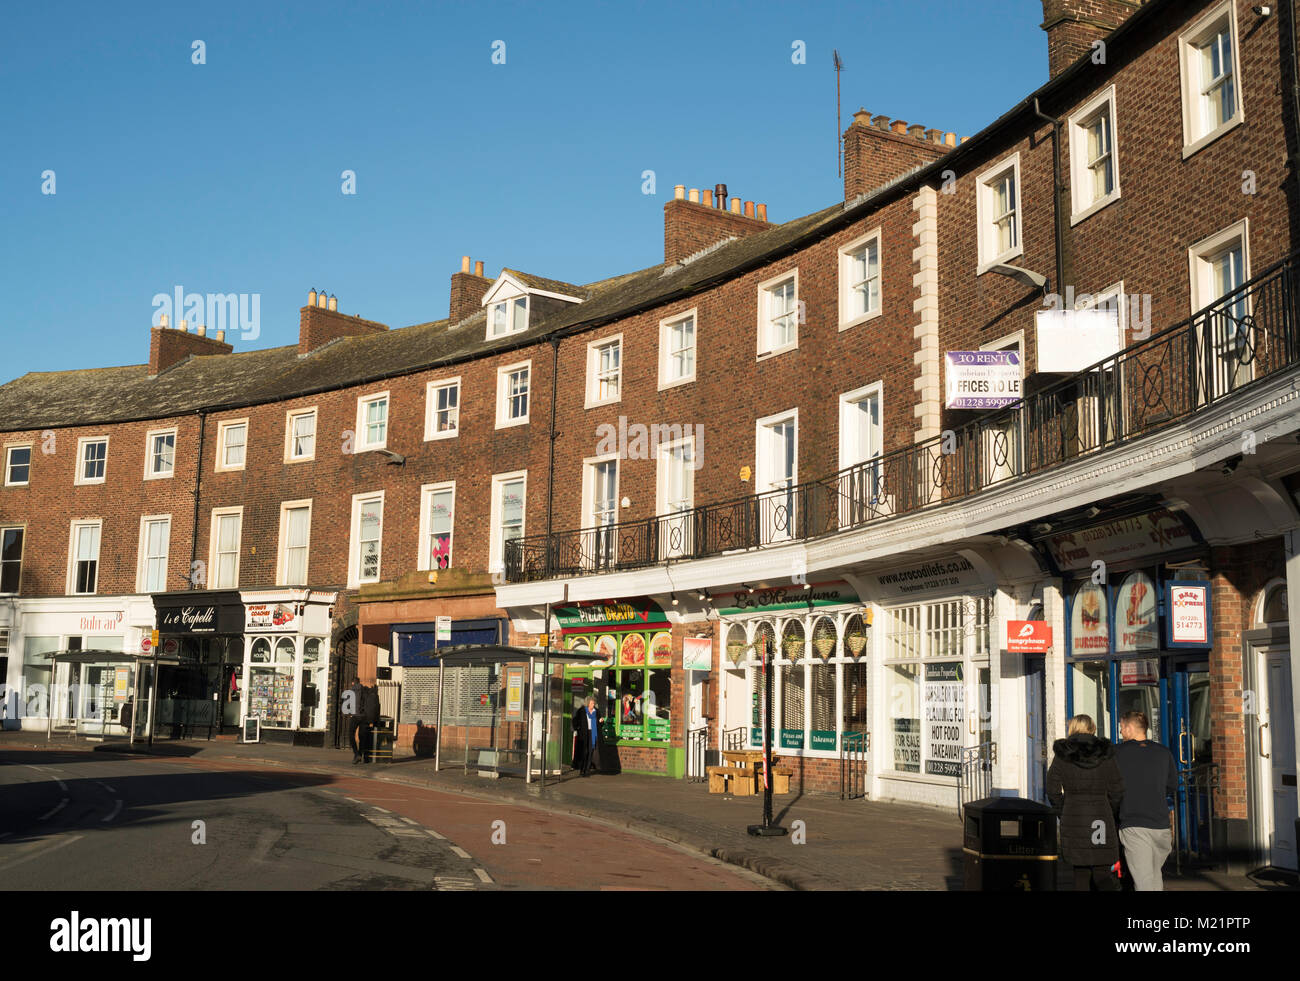 Début du 19ème siècle les bâtiments classés dans le Croissant, Carlisle, Cumbria, England, UK Banque D'Images